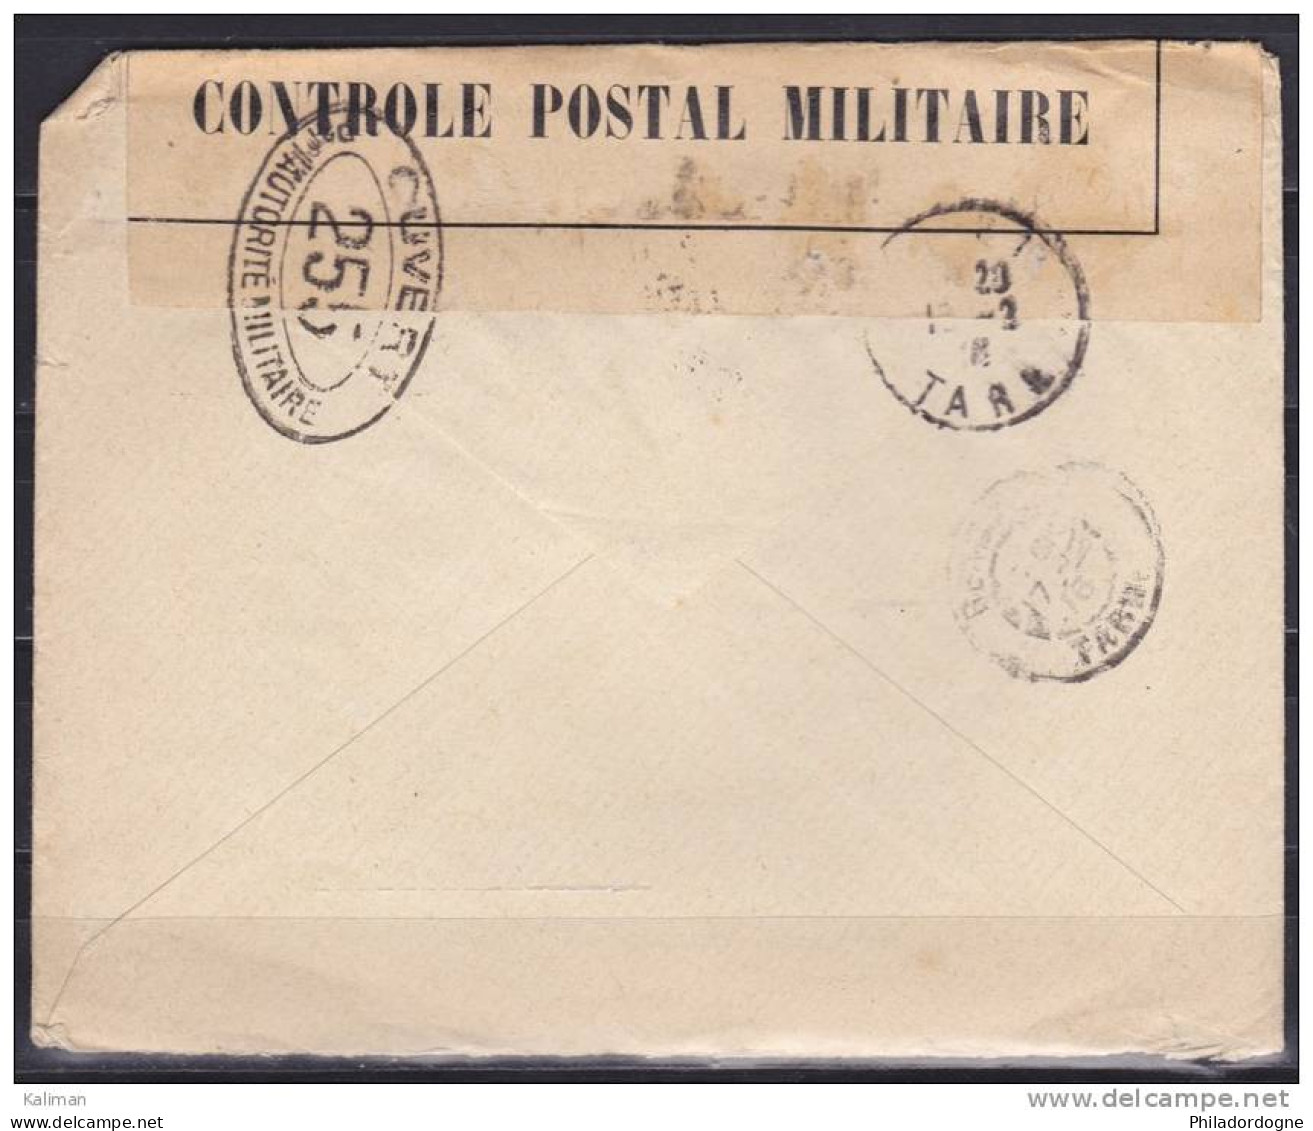 France - Enveloppe - Censure - Ouvert Par L'autorité Militaire - Agence Internationale Des Prisonniers De Guerre 1916 - Croix Rouge